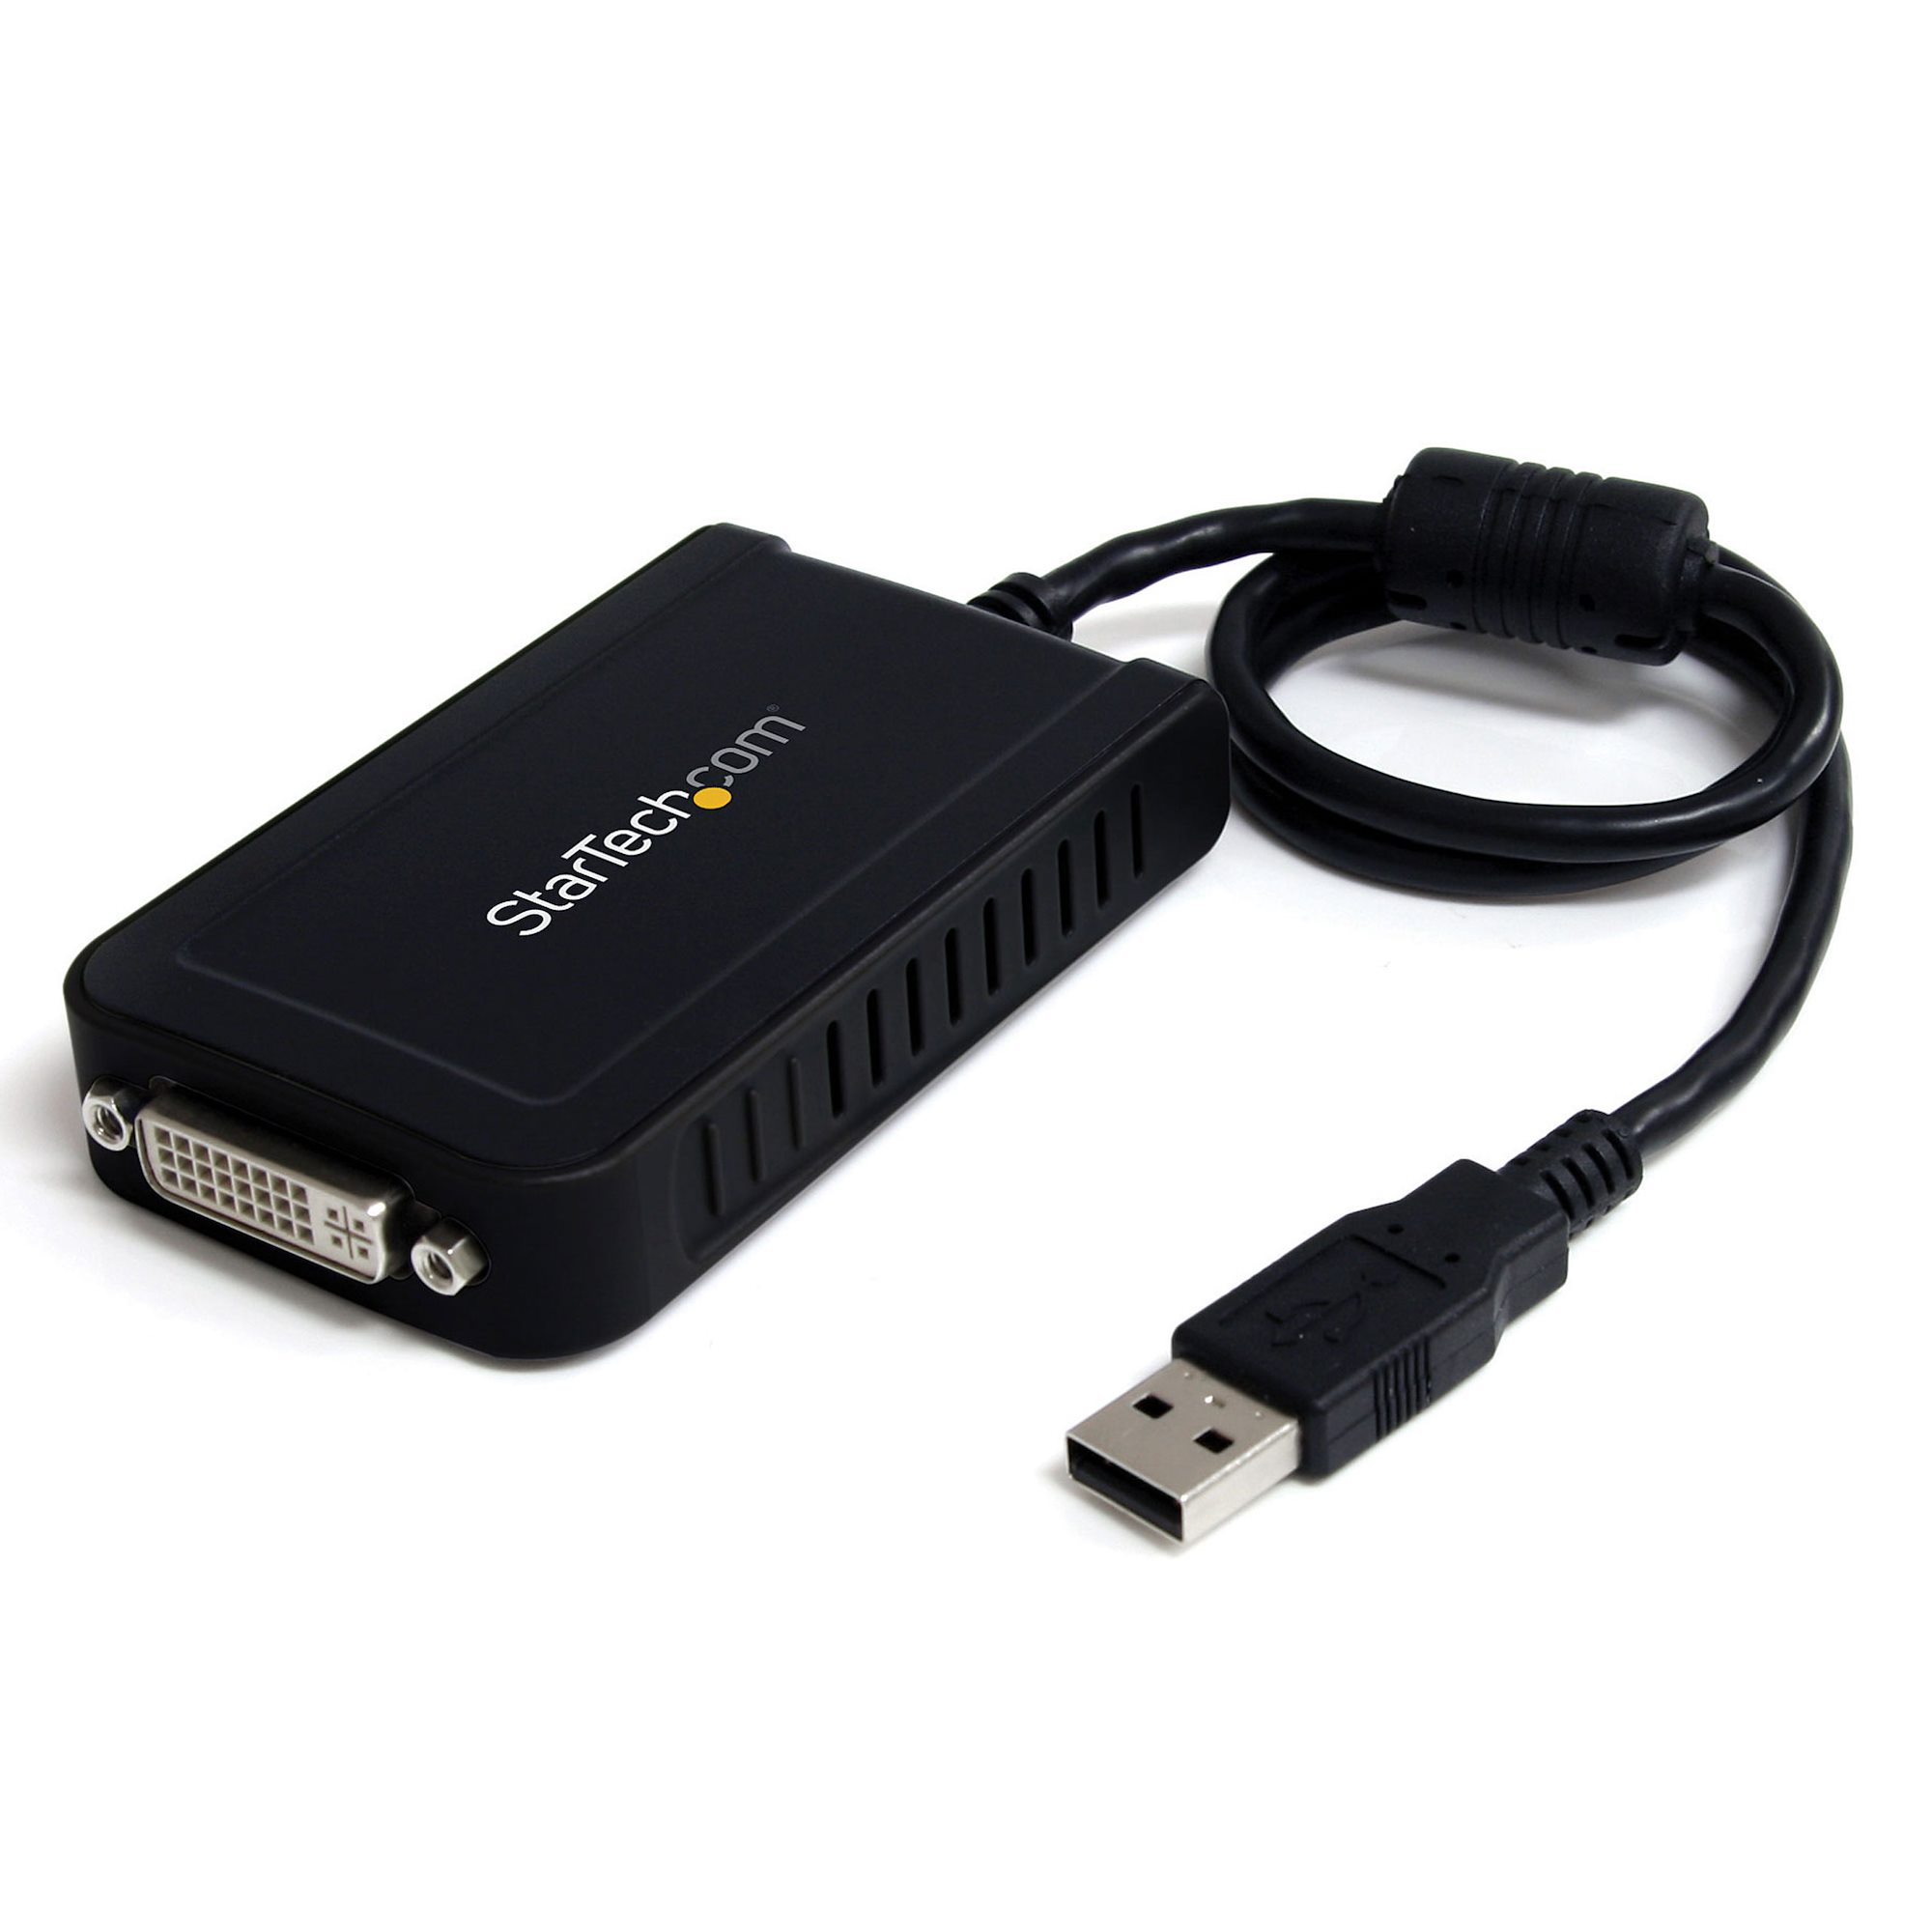 Type-C ドッキングステーション USB ケーブル長 30cm モバイルドッキングステーション USBハブ 持ち運び ロングケーブル 7in1 4K 60Hz対応 HDMI LAN SD microSDカードリーダー USB×2 PD100W イーサネット スリムタイプ